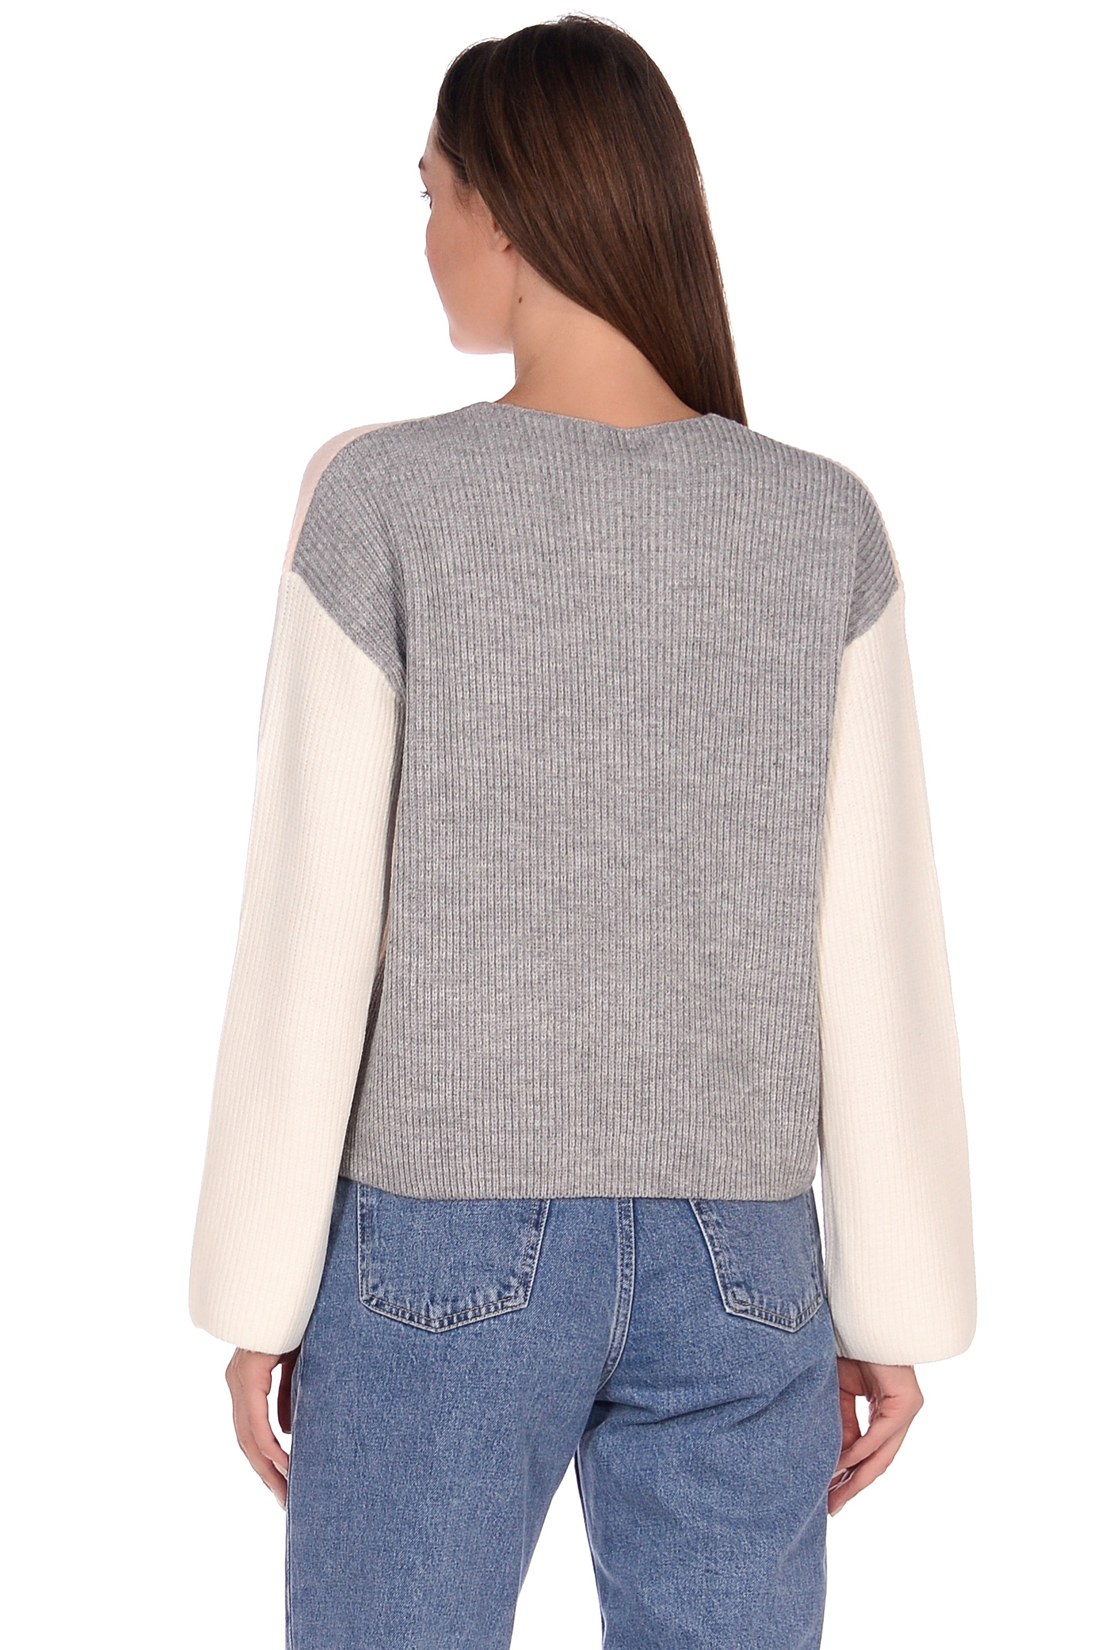 Укороченный пуловер в стиле колор-блок (арт. baon B139565), размер L, цвет белый Укороченный пуловер в стиле колор-блок (арт. baon B139565) - фото 3